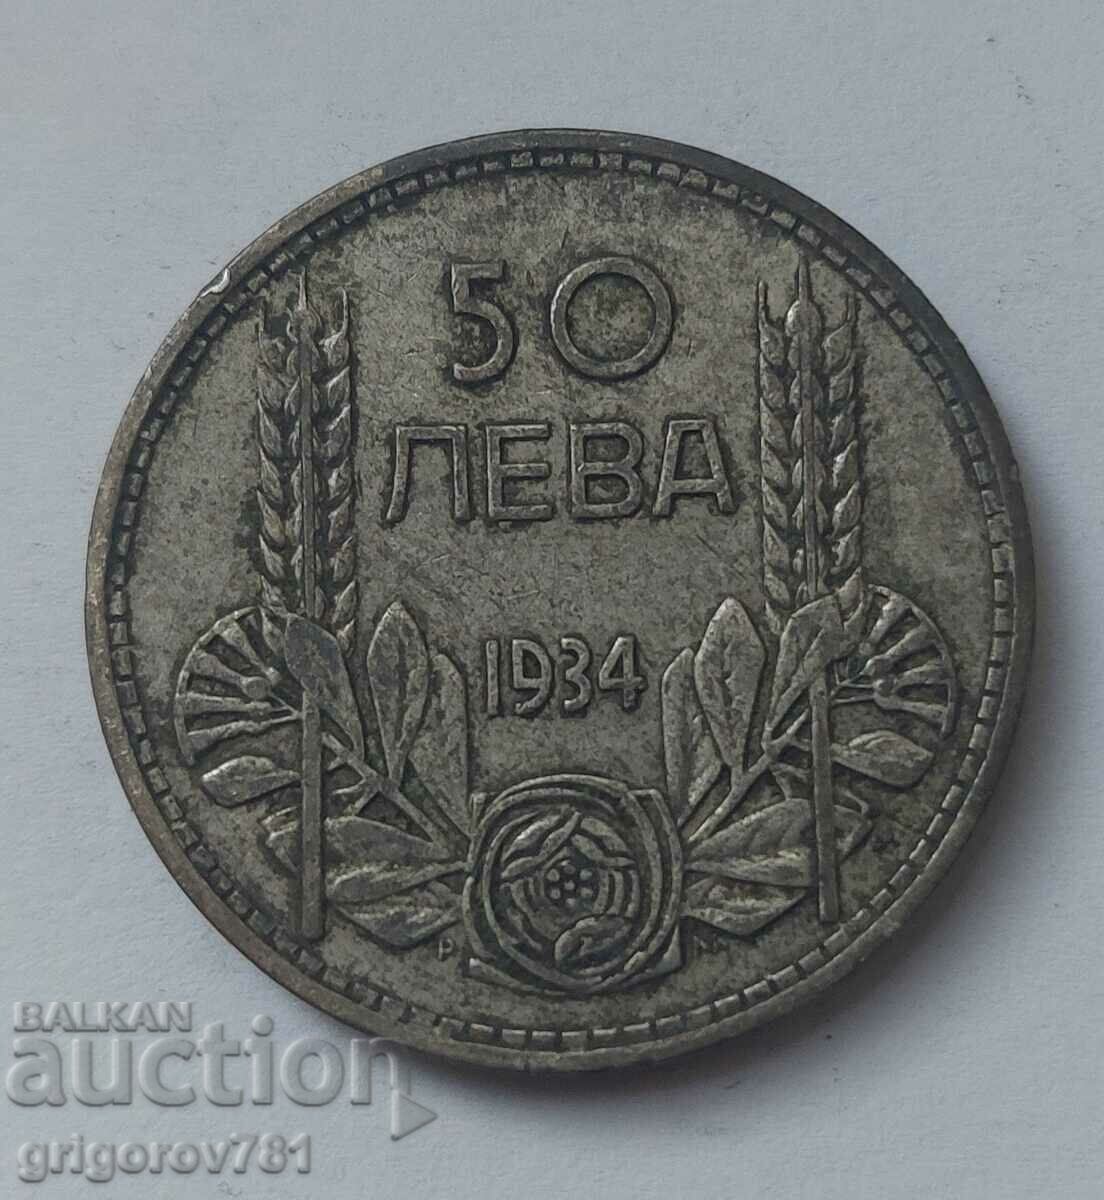 50 leva silver Bulgaria 1934 - silver coin #25